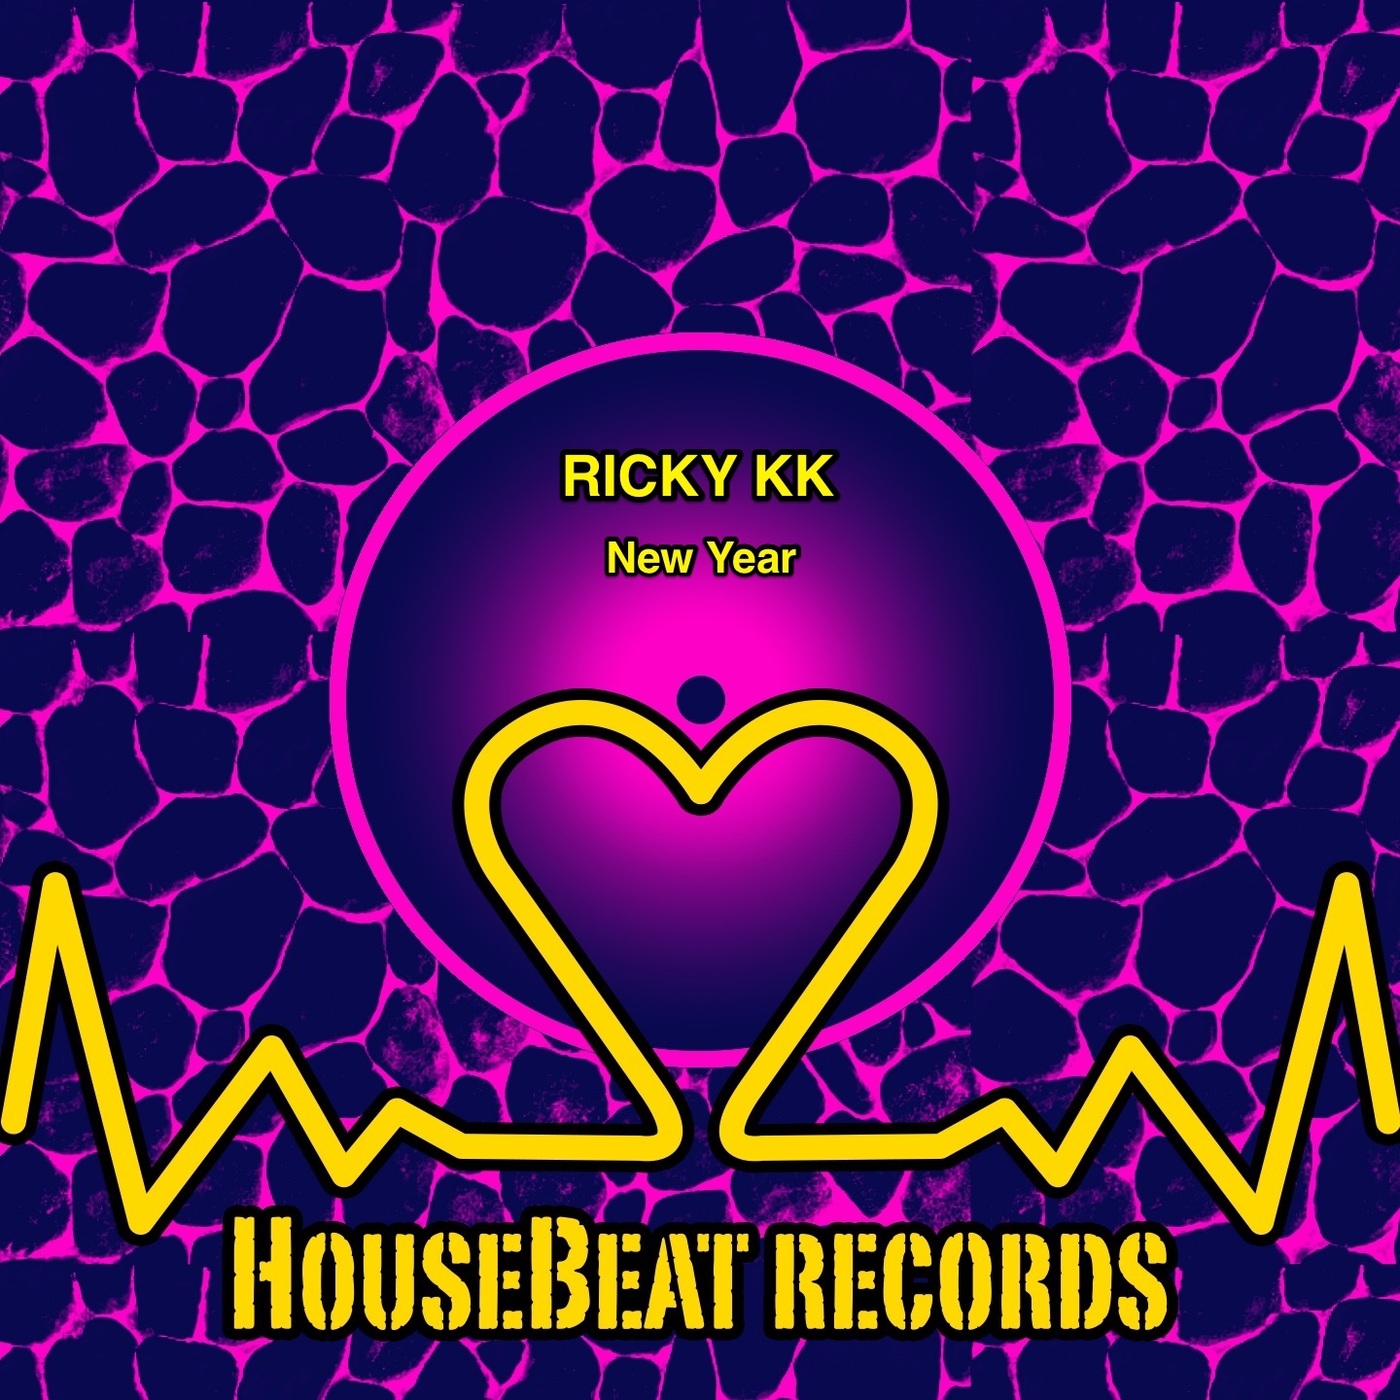 Ricky KK - New Year / HouseBeat Records